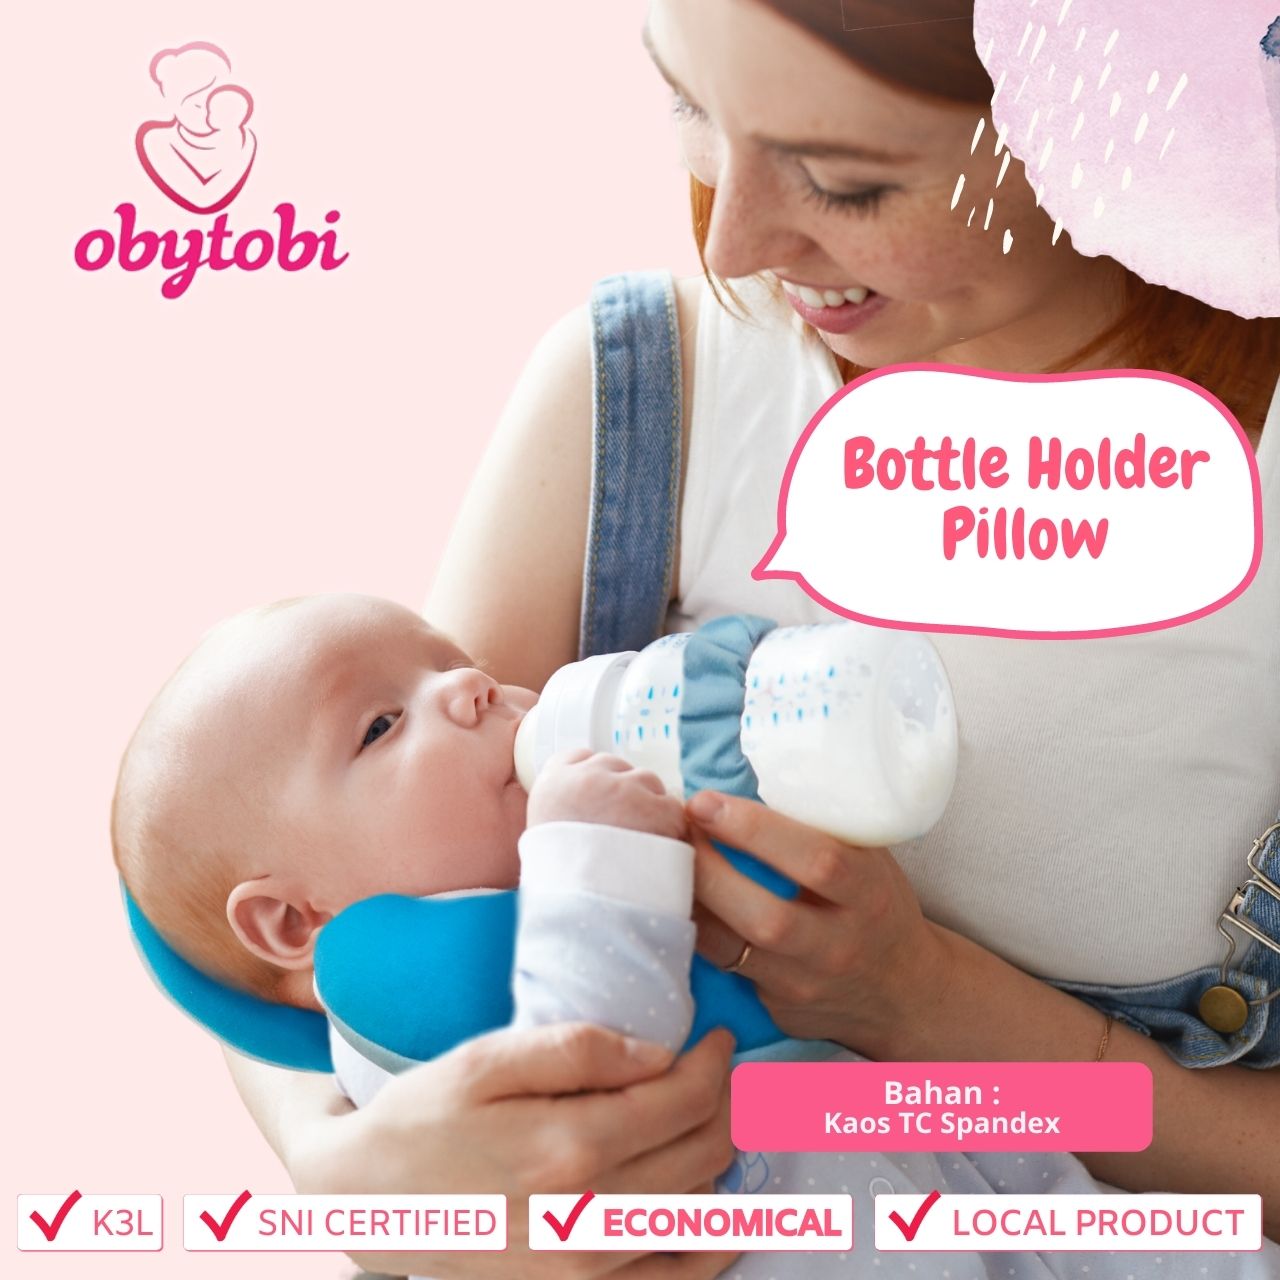 Bottle Holder Pillow Obytobi